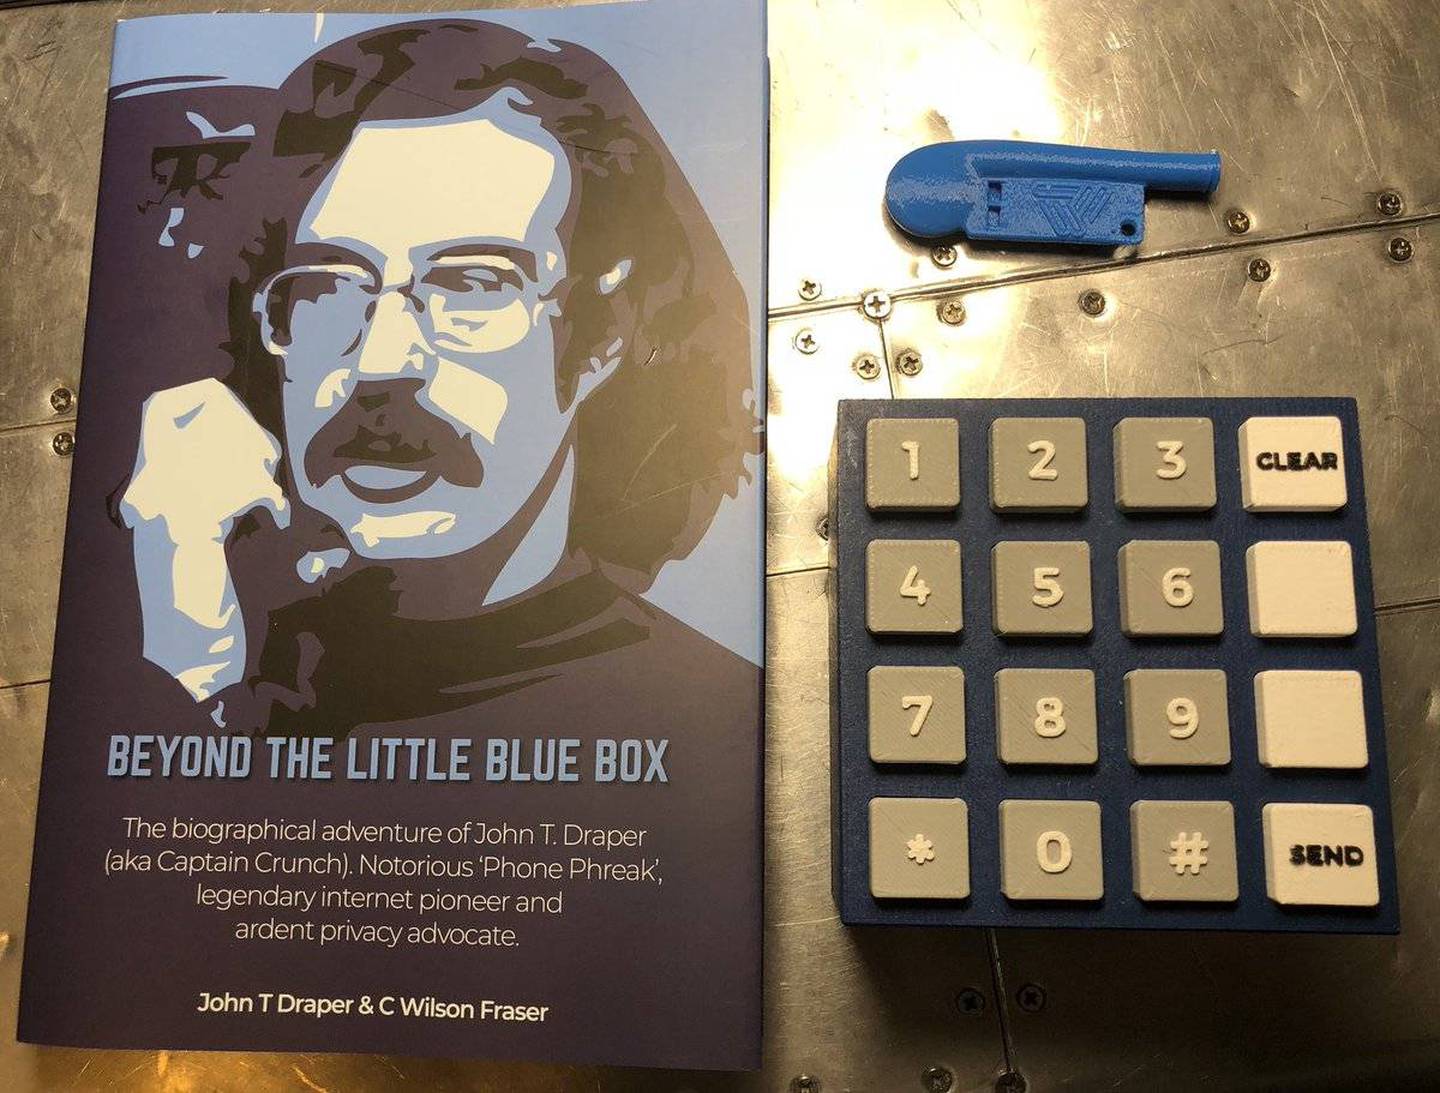 Включи книгу стива 9. Blue Box Стива Джобса. Джон Дрейпер Капитан Кранч. Стив Джобс синяя коробка. Капитан Кранч хакер.